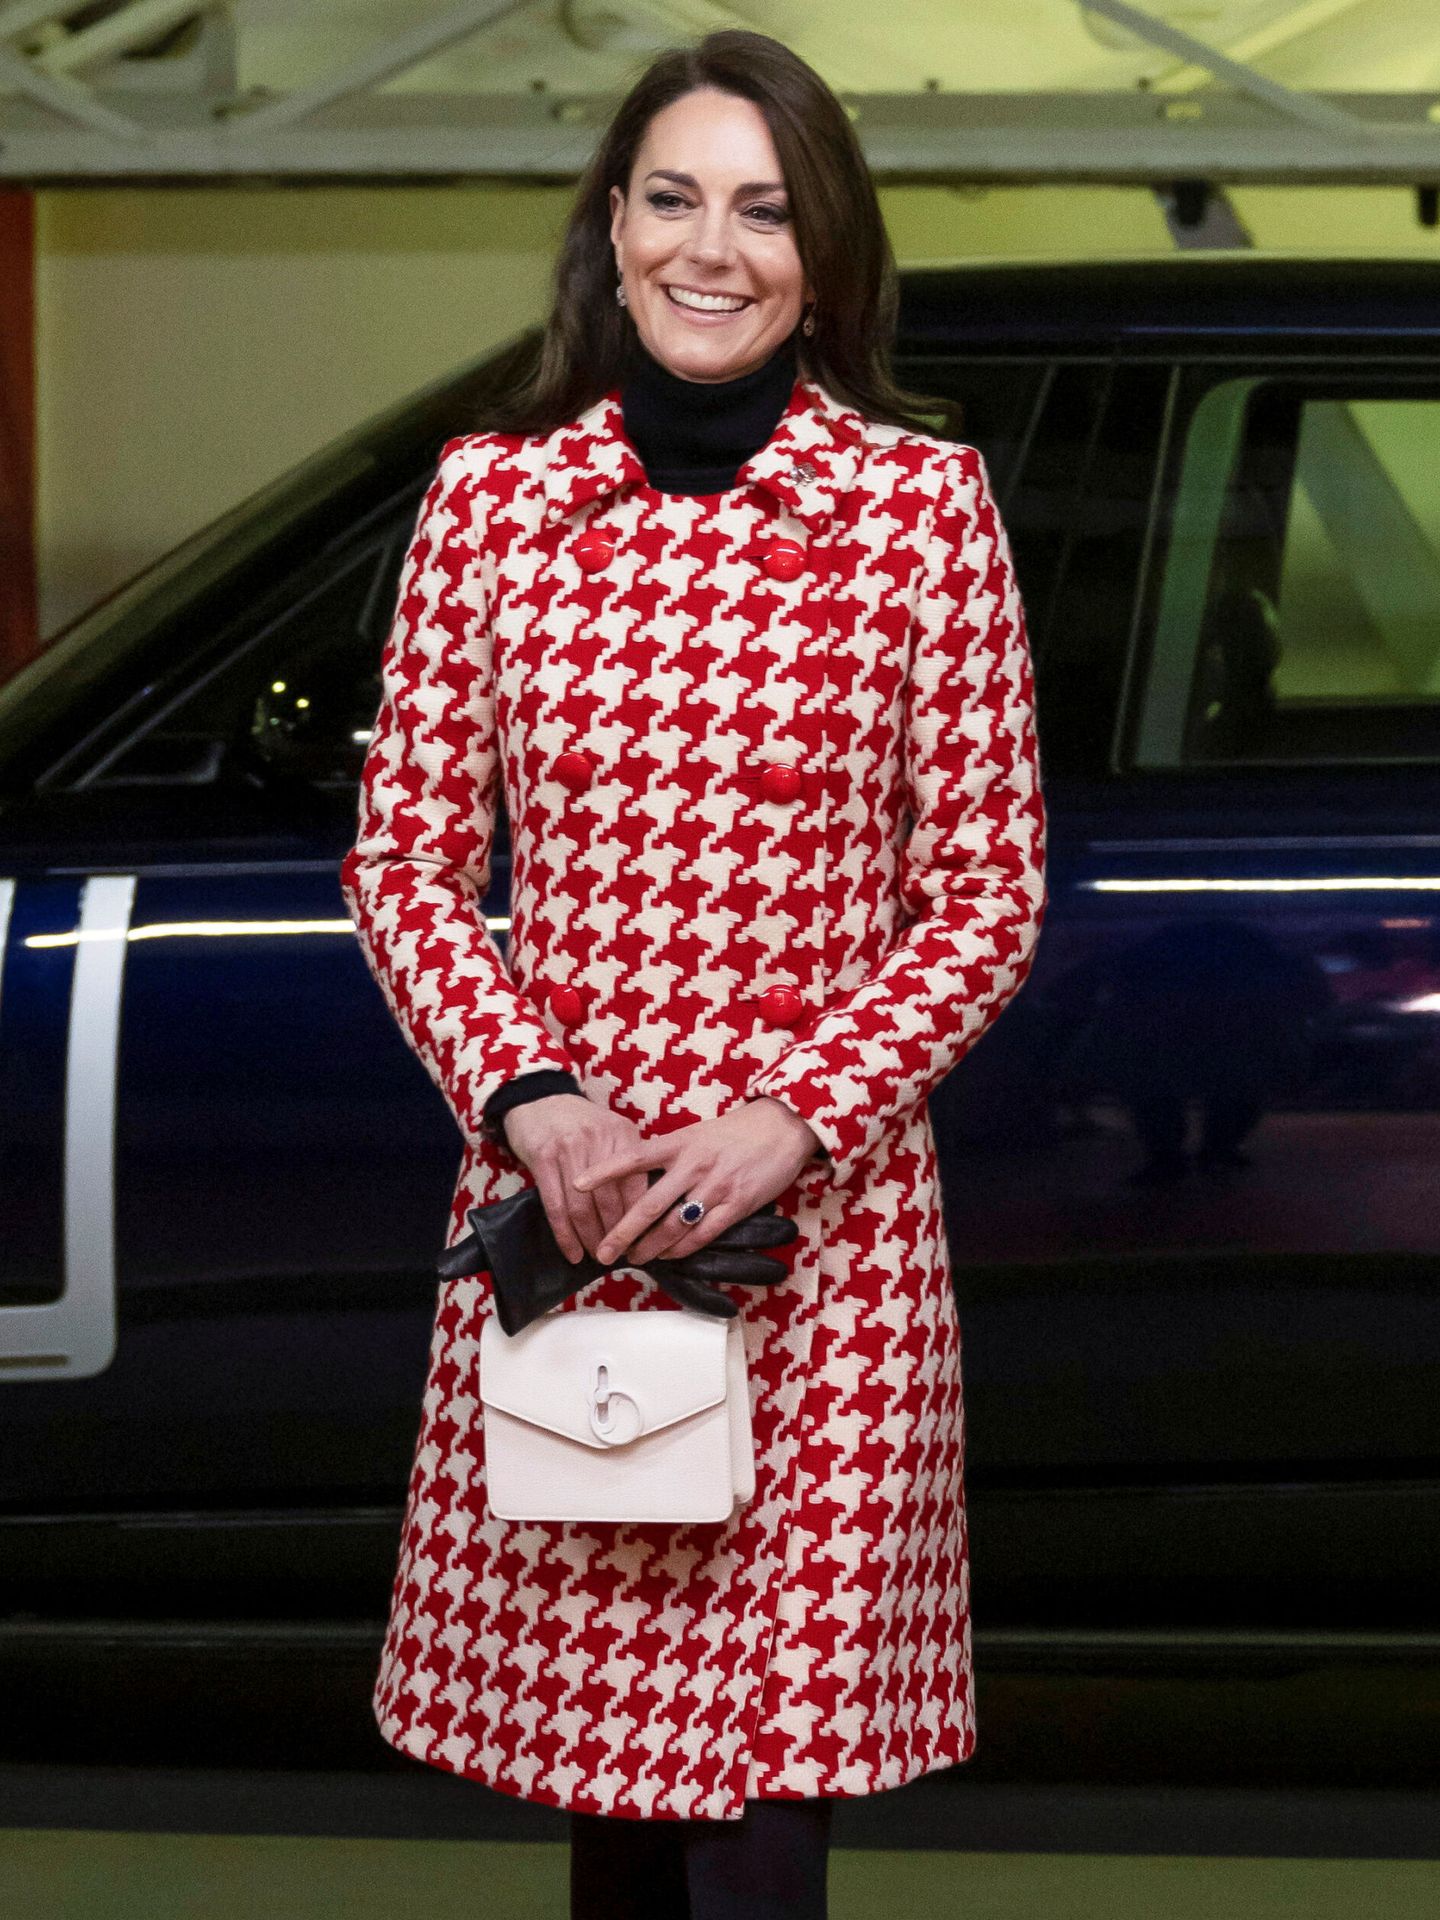 El look escogido por Kate Middleton para asistir al encuentro deportivo. (Reuters)